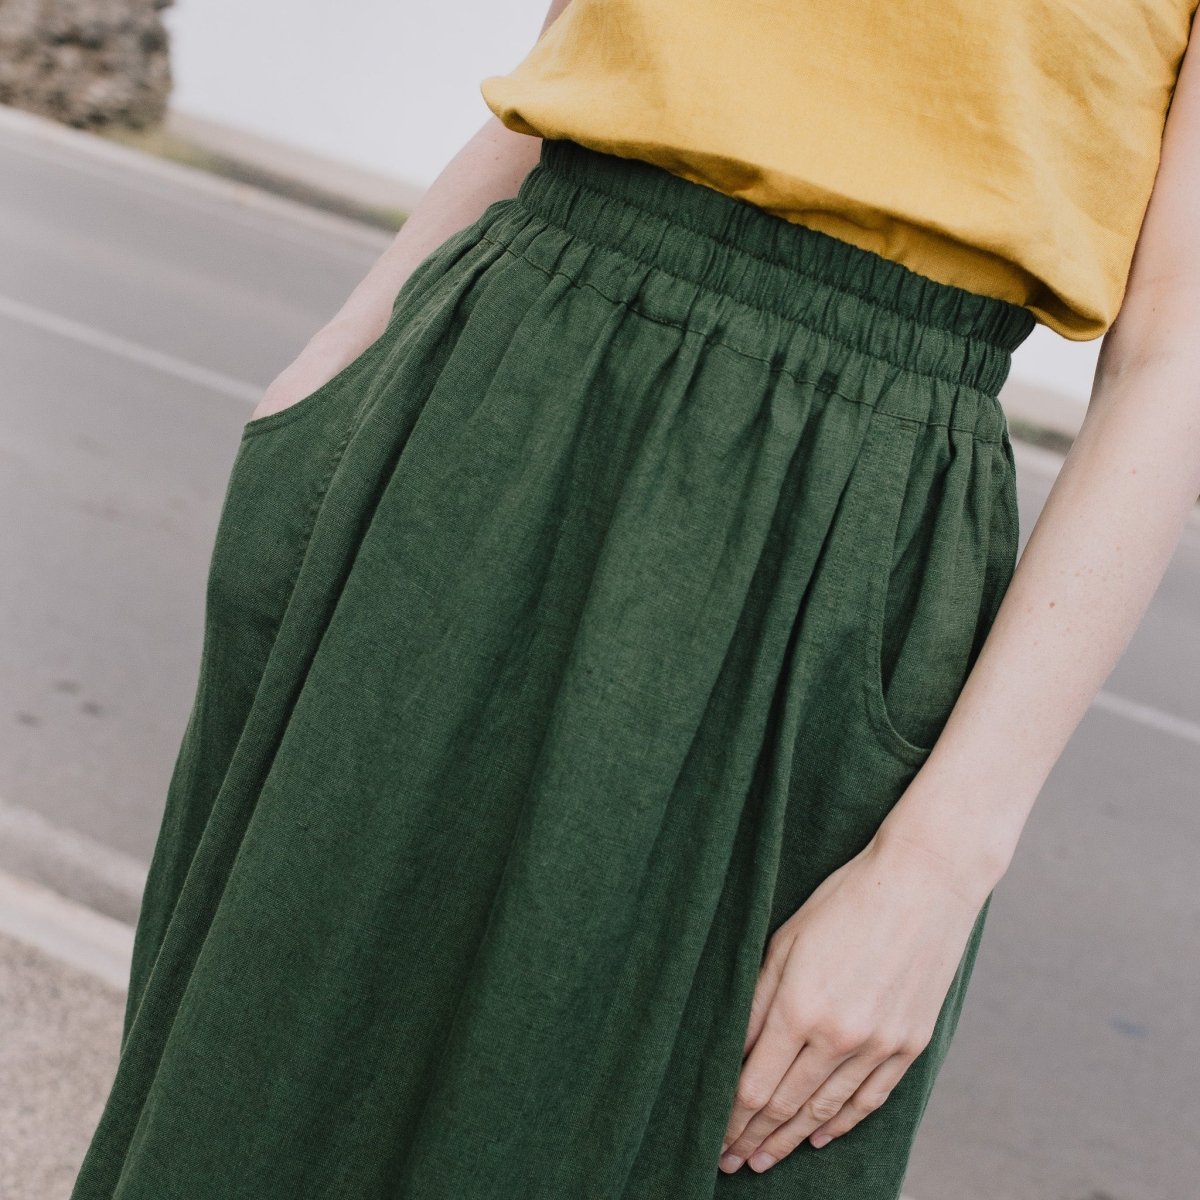 OIA gathered linen skirt - notPERFECTLINEN